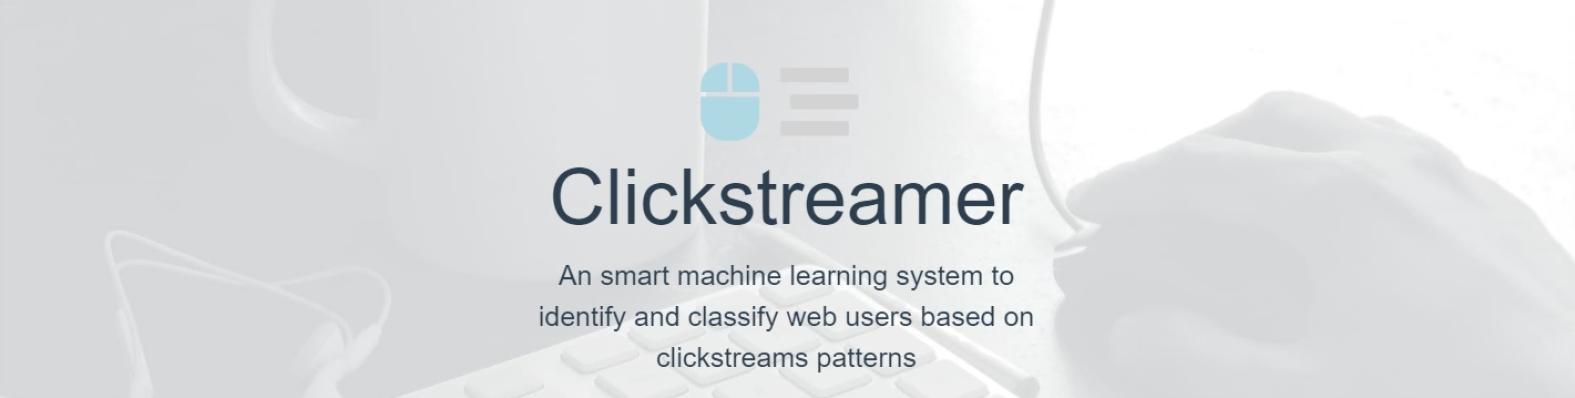 clickstreamer_banner.jpg